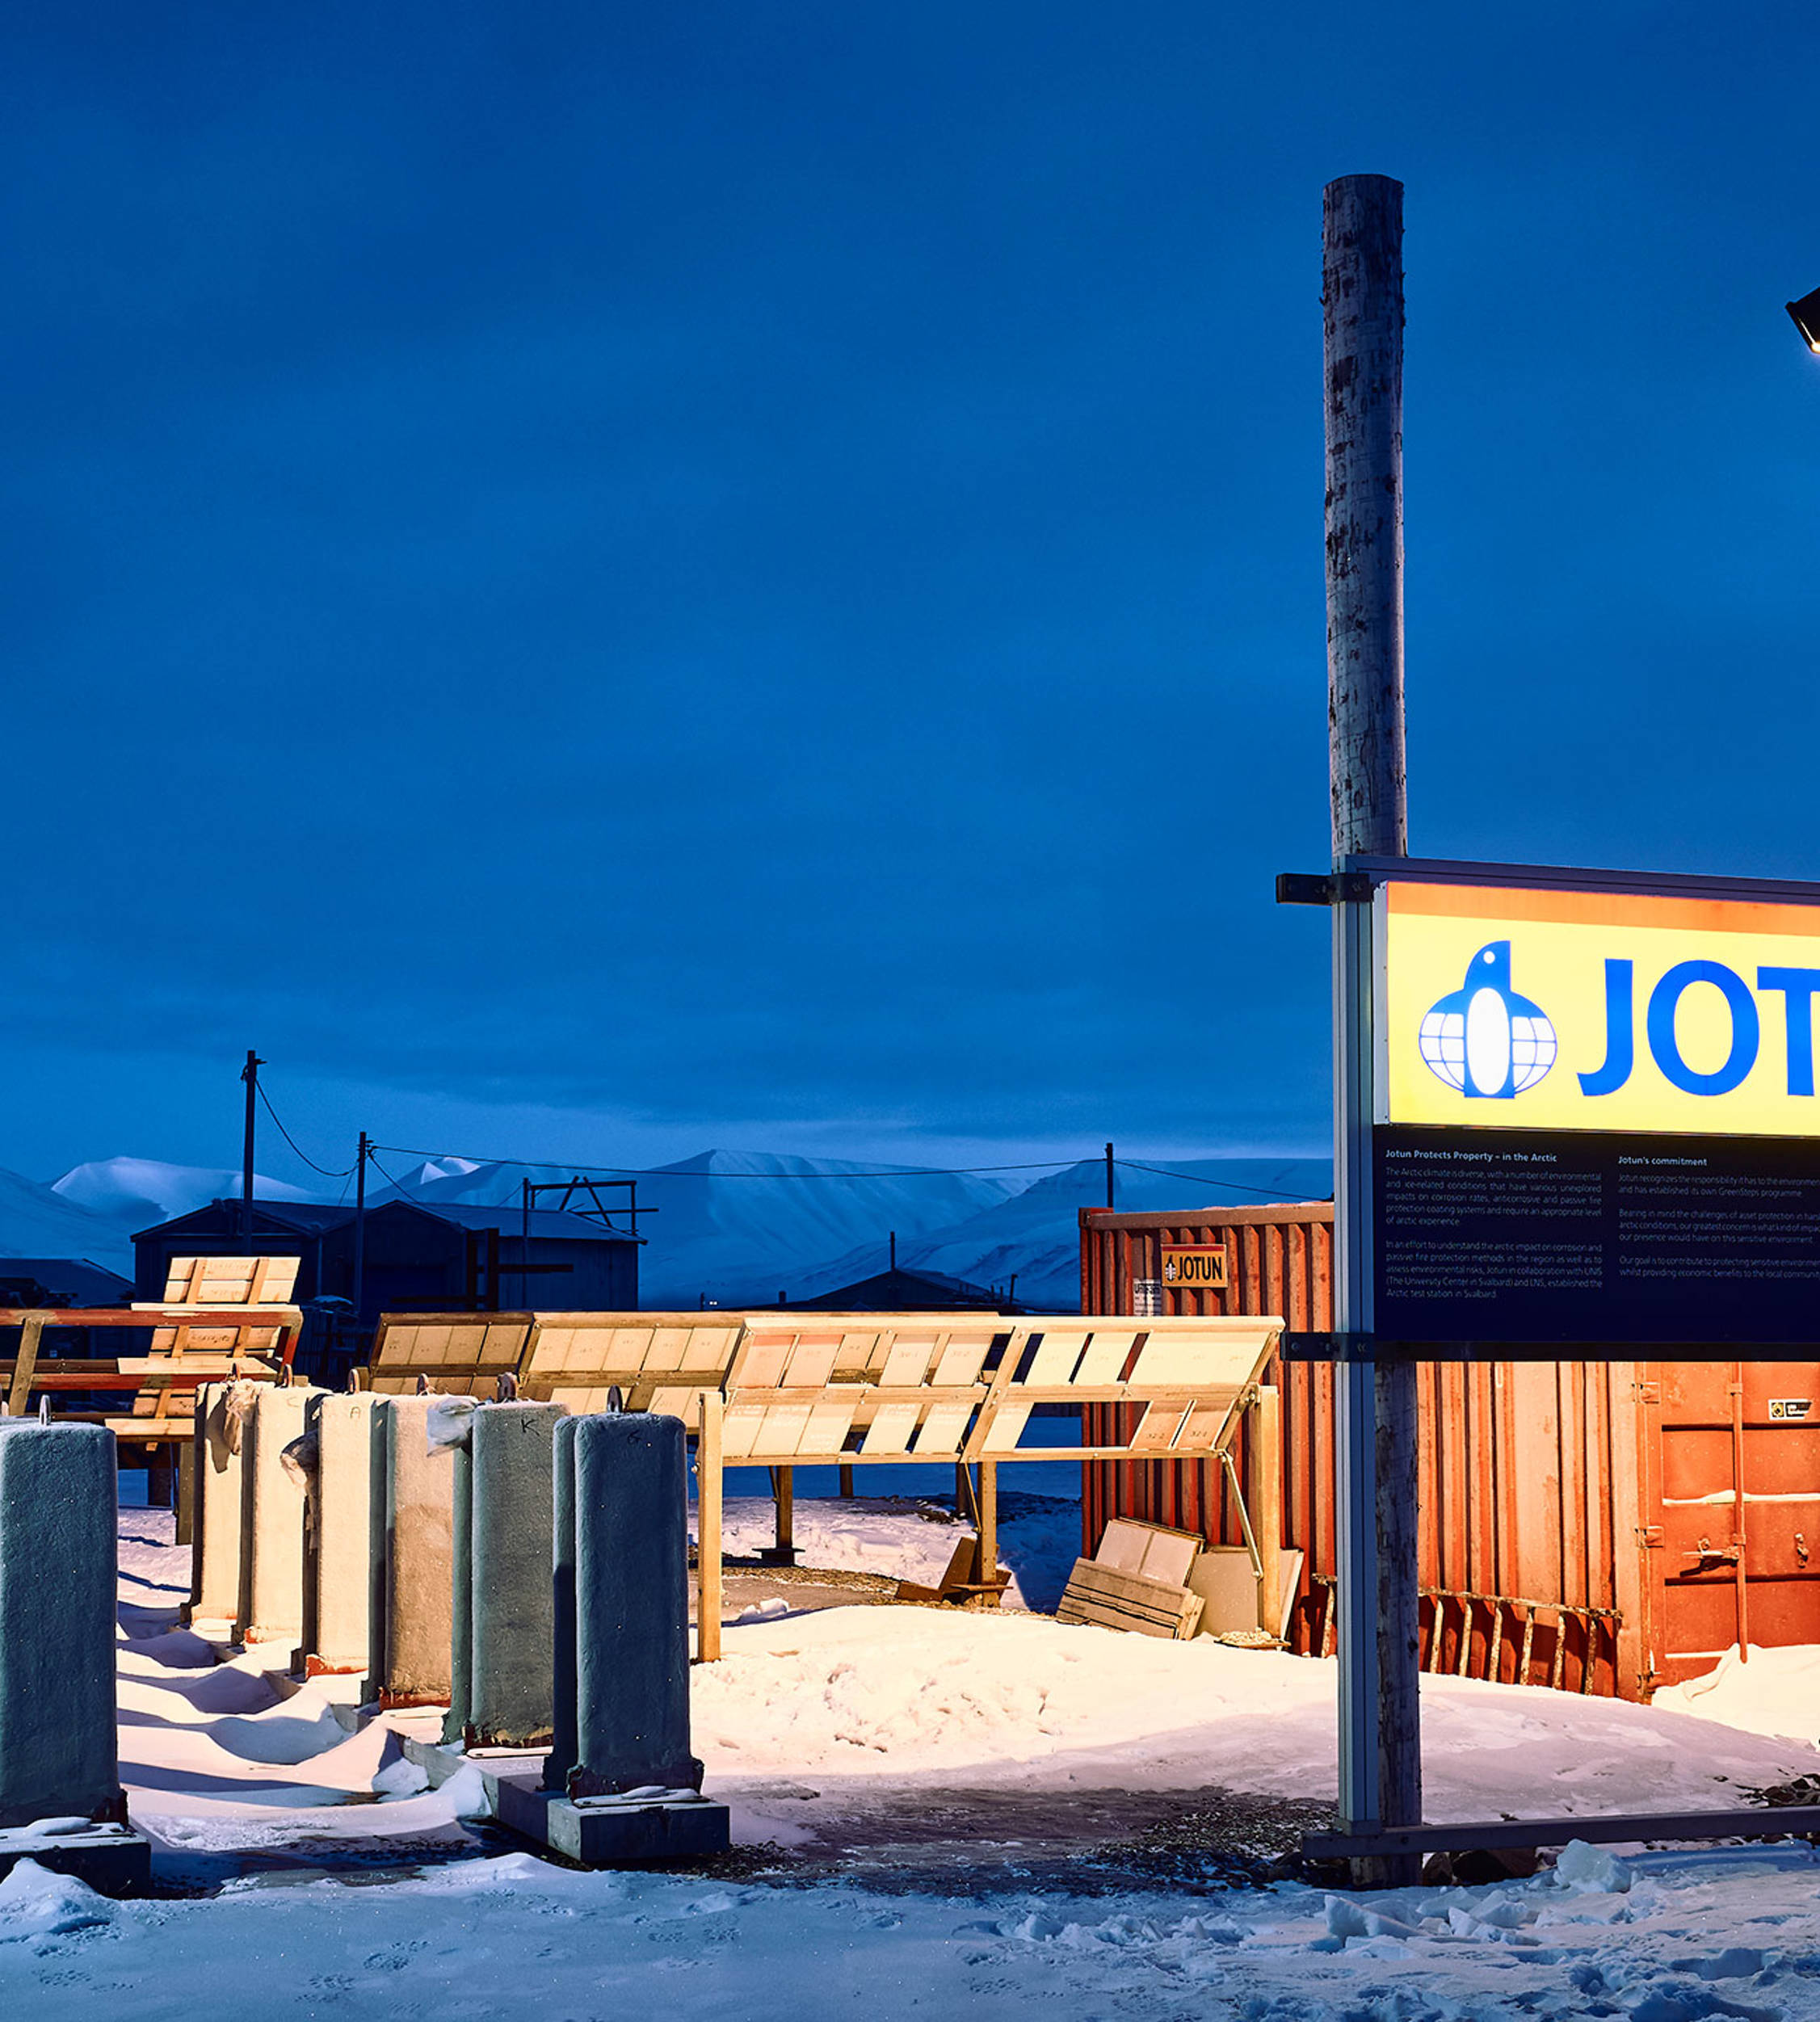 Jotun's test centre in Svalbard, Norway